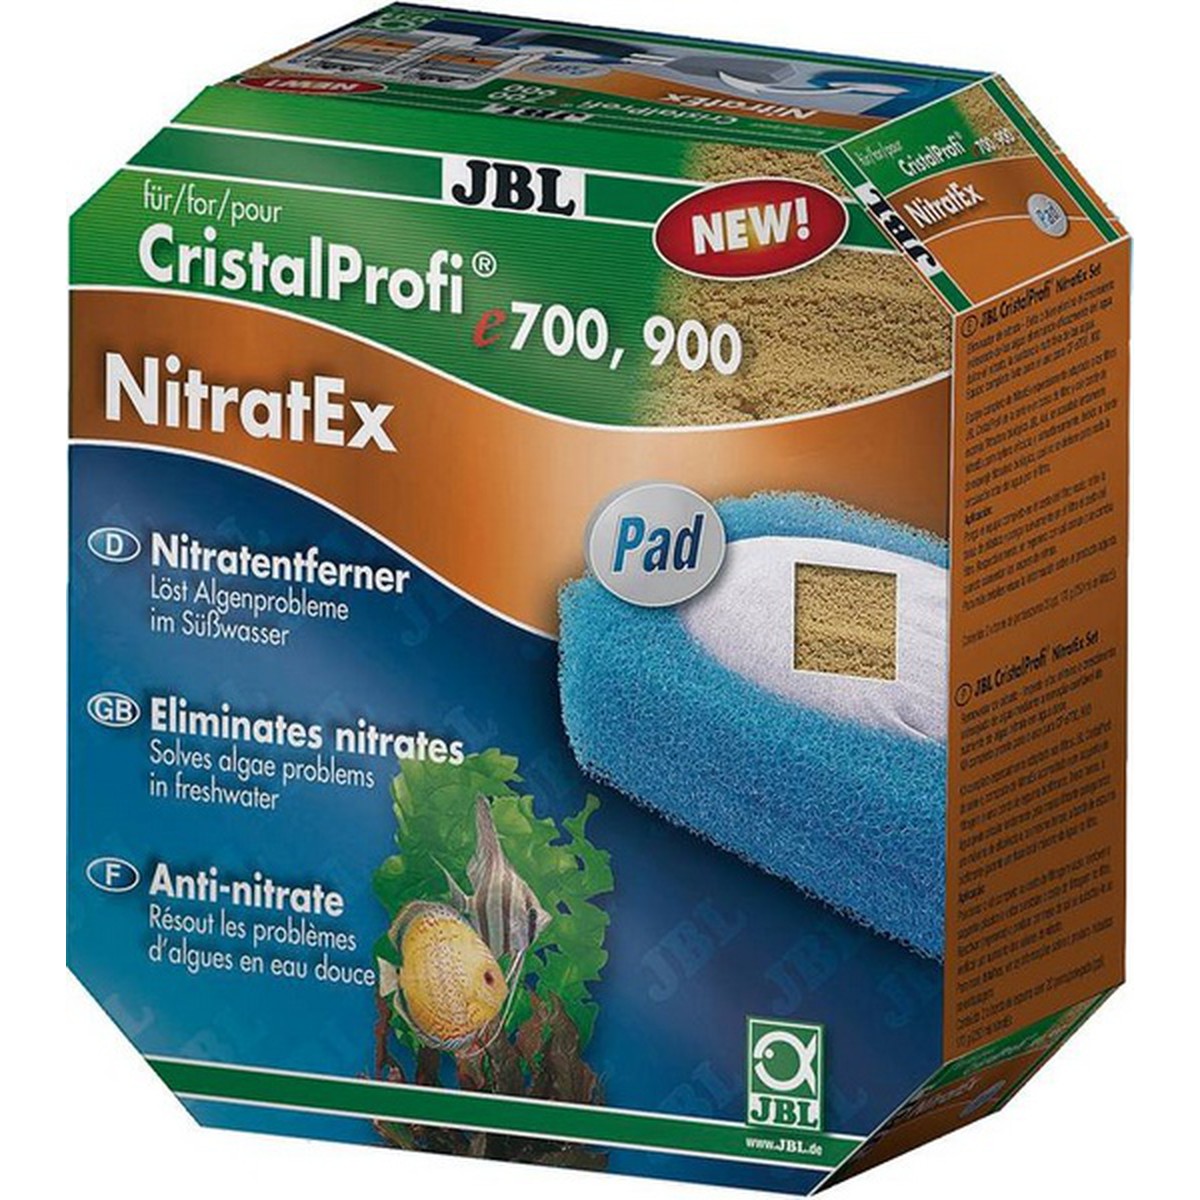   JBL NitratEx Pad CP e1500  